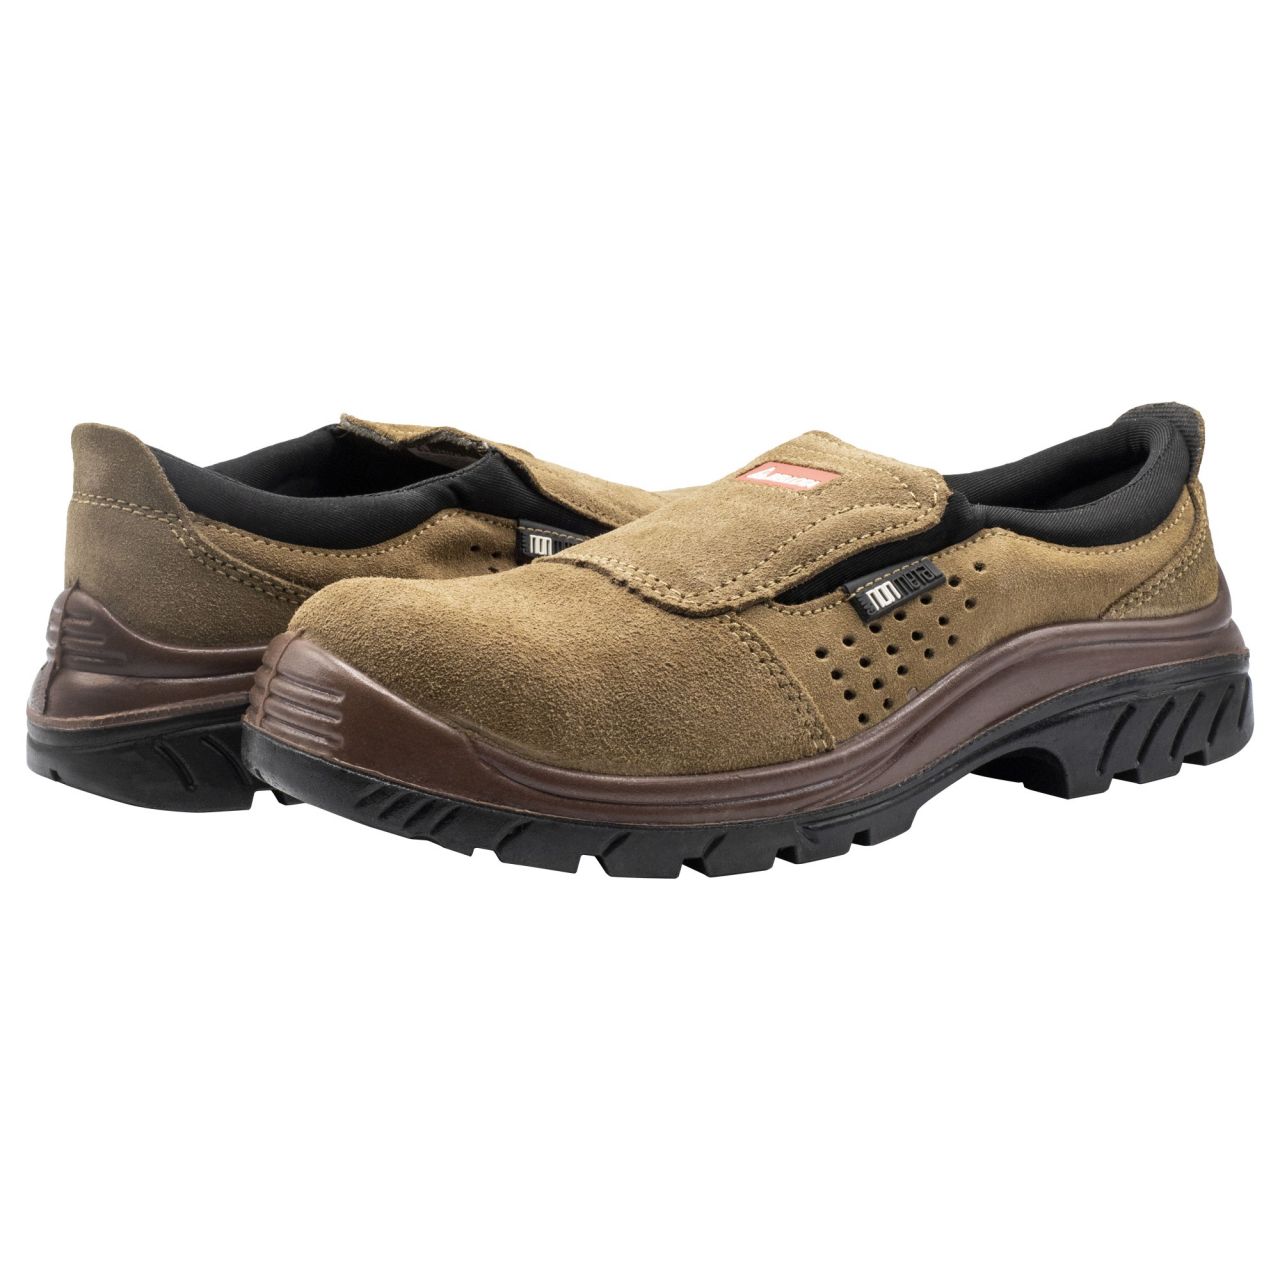 Zapato de seguridad Nonmetal Easy serraje marrón S1P talla 43 / 7222743S1P